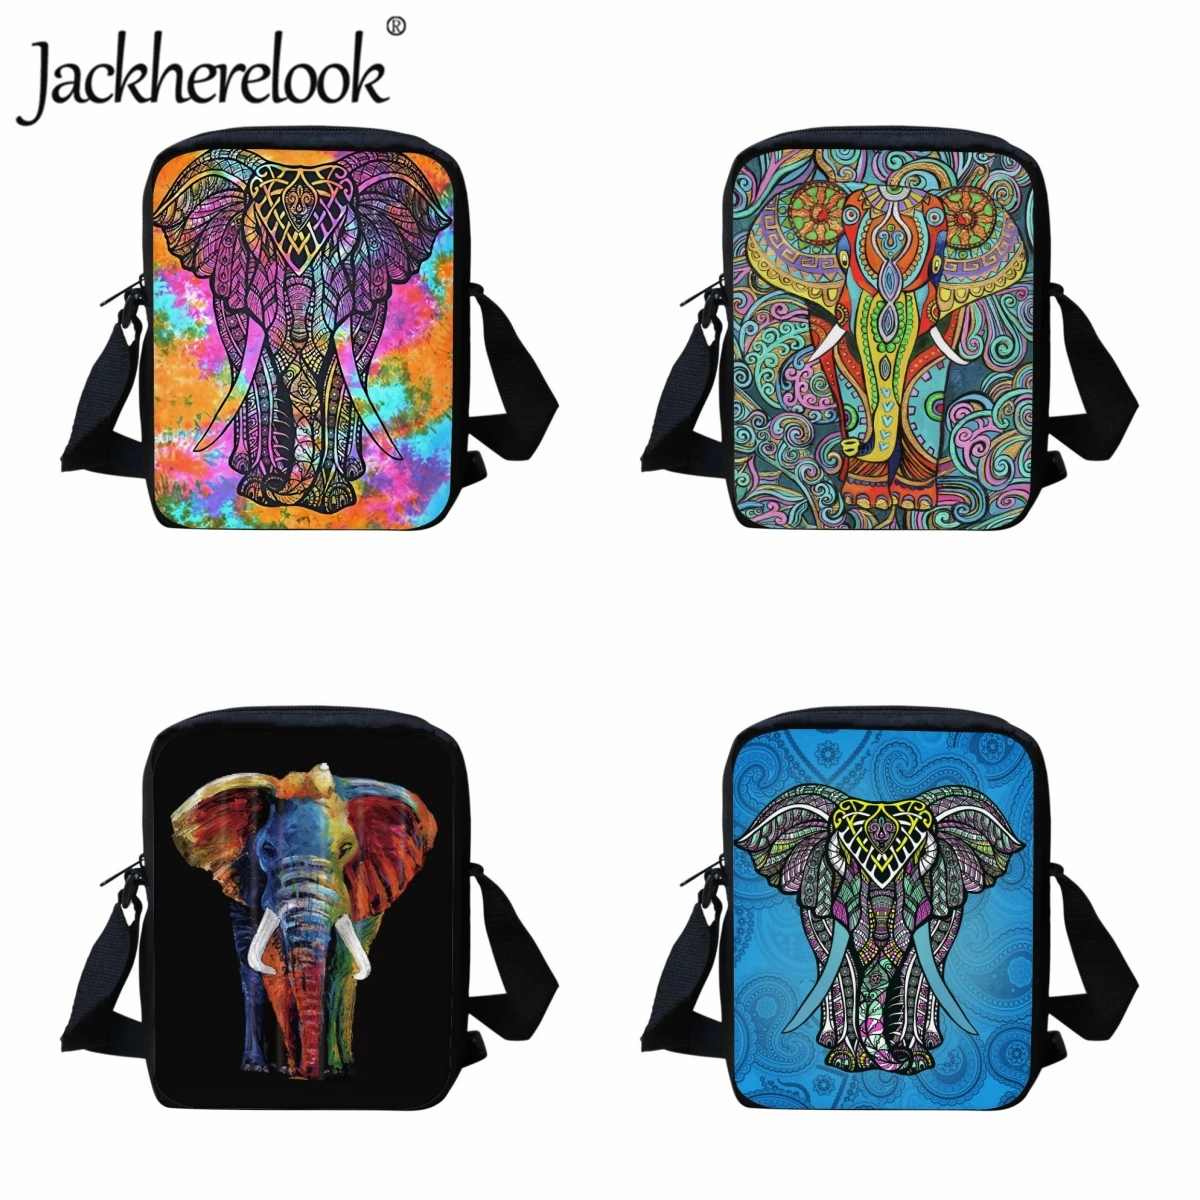 Jackherelook kinder Umhängetaschen Farbige Elefanten Mode Reisetasche Kinder Umhängetasche Jungen Mädchen Schulter Tasche